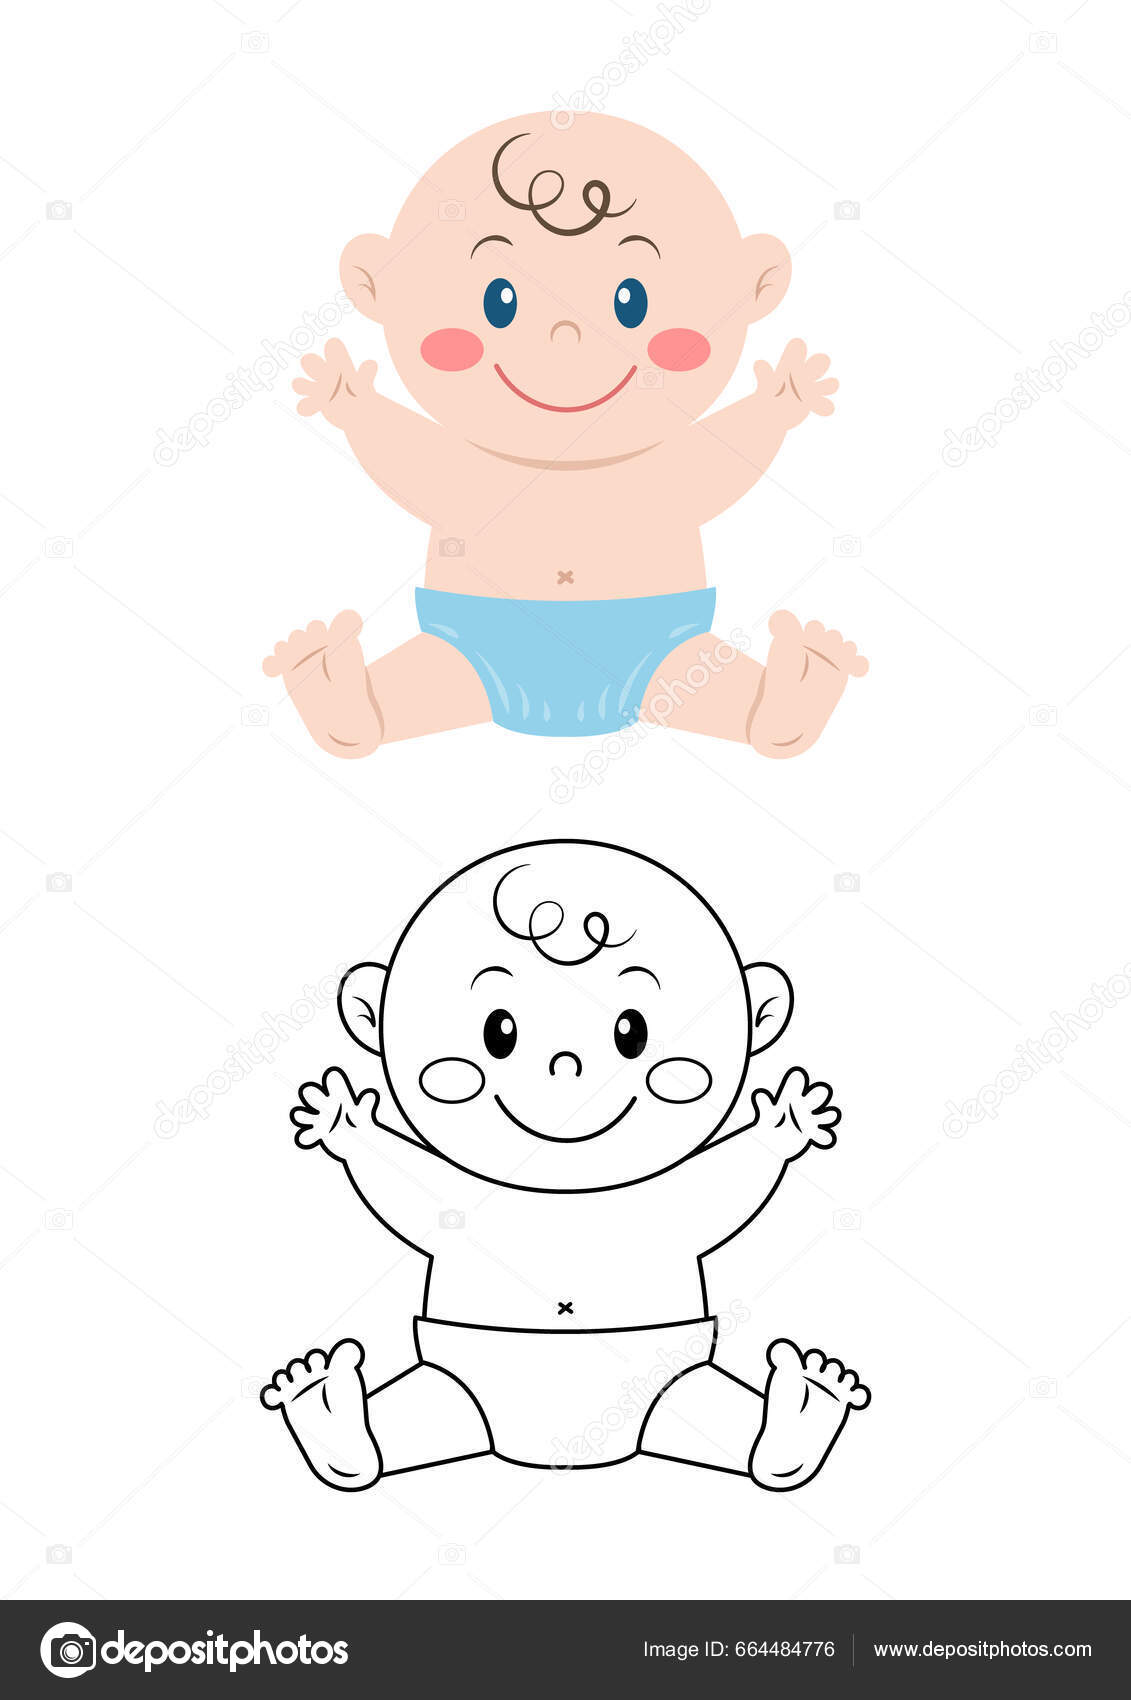 https://st5.depositphotos.com/42867620/66448/v/1600/depositphotos_664484776-stock-illustration-baby-cute-vector-illustration-cartoon.jpg